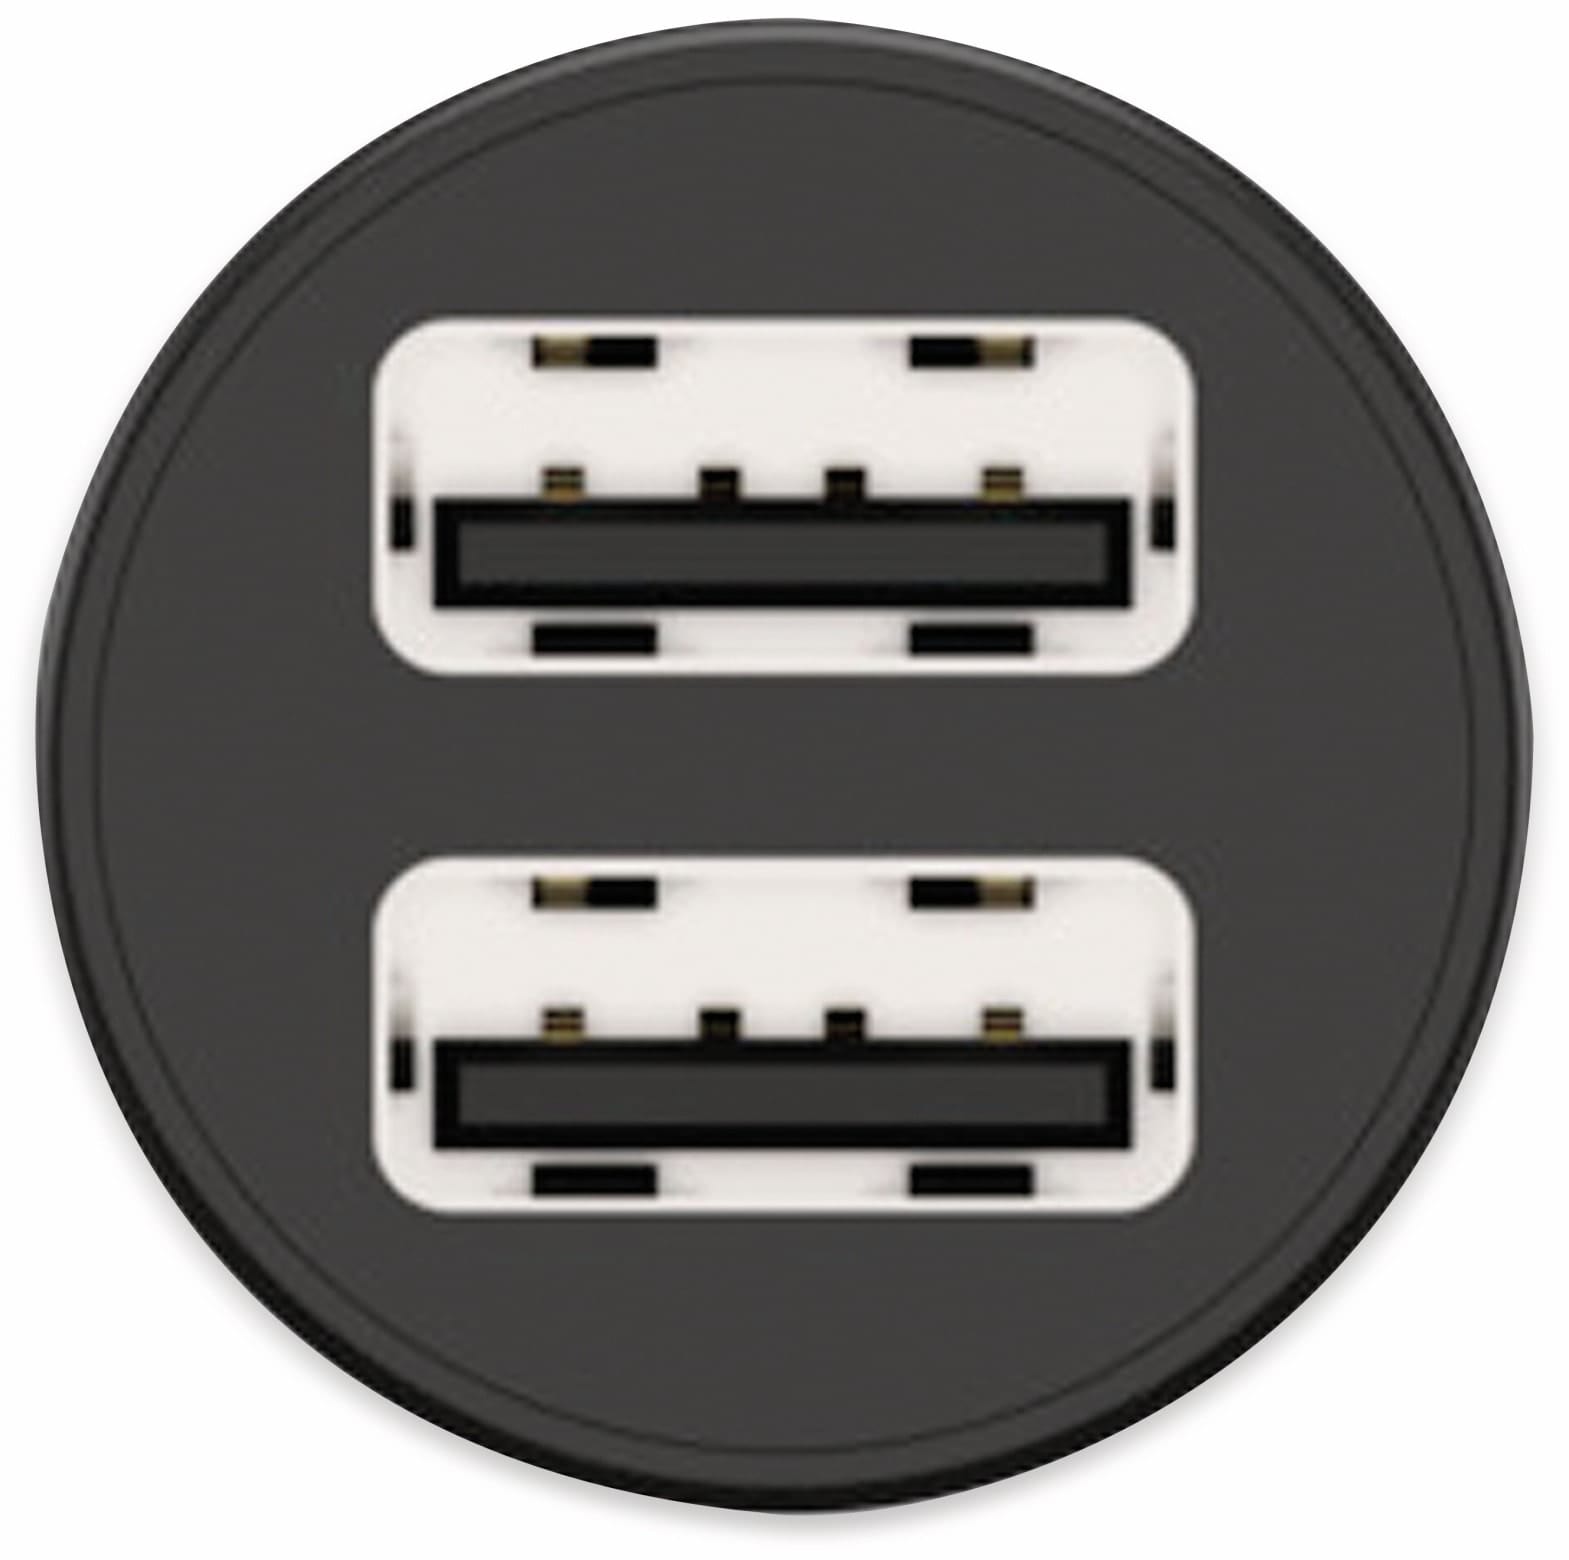 ANSMANN USB-Ladegerät KFZ CC212, 12 W, 5 V-, 2,4 A, 2-port, schwarz